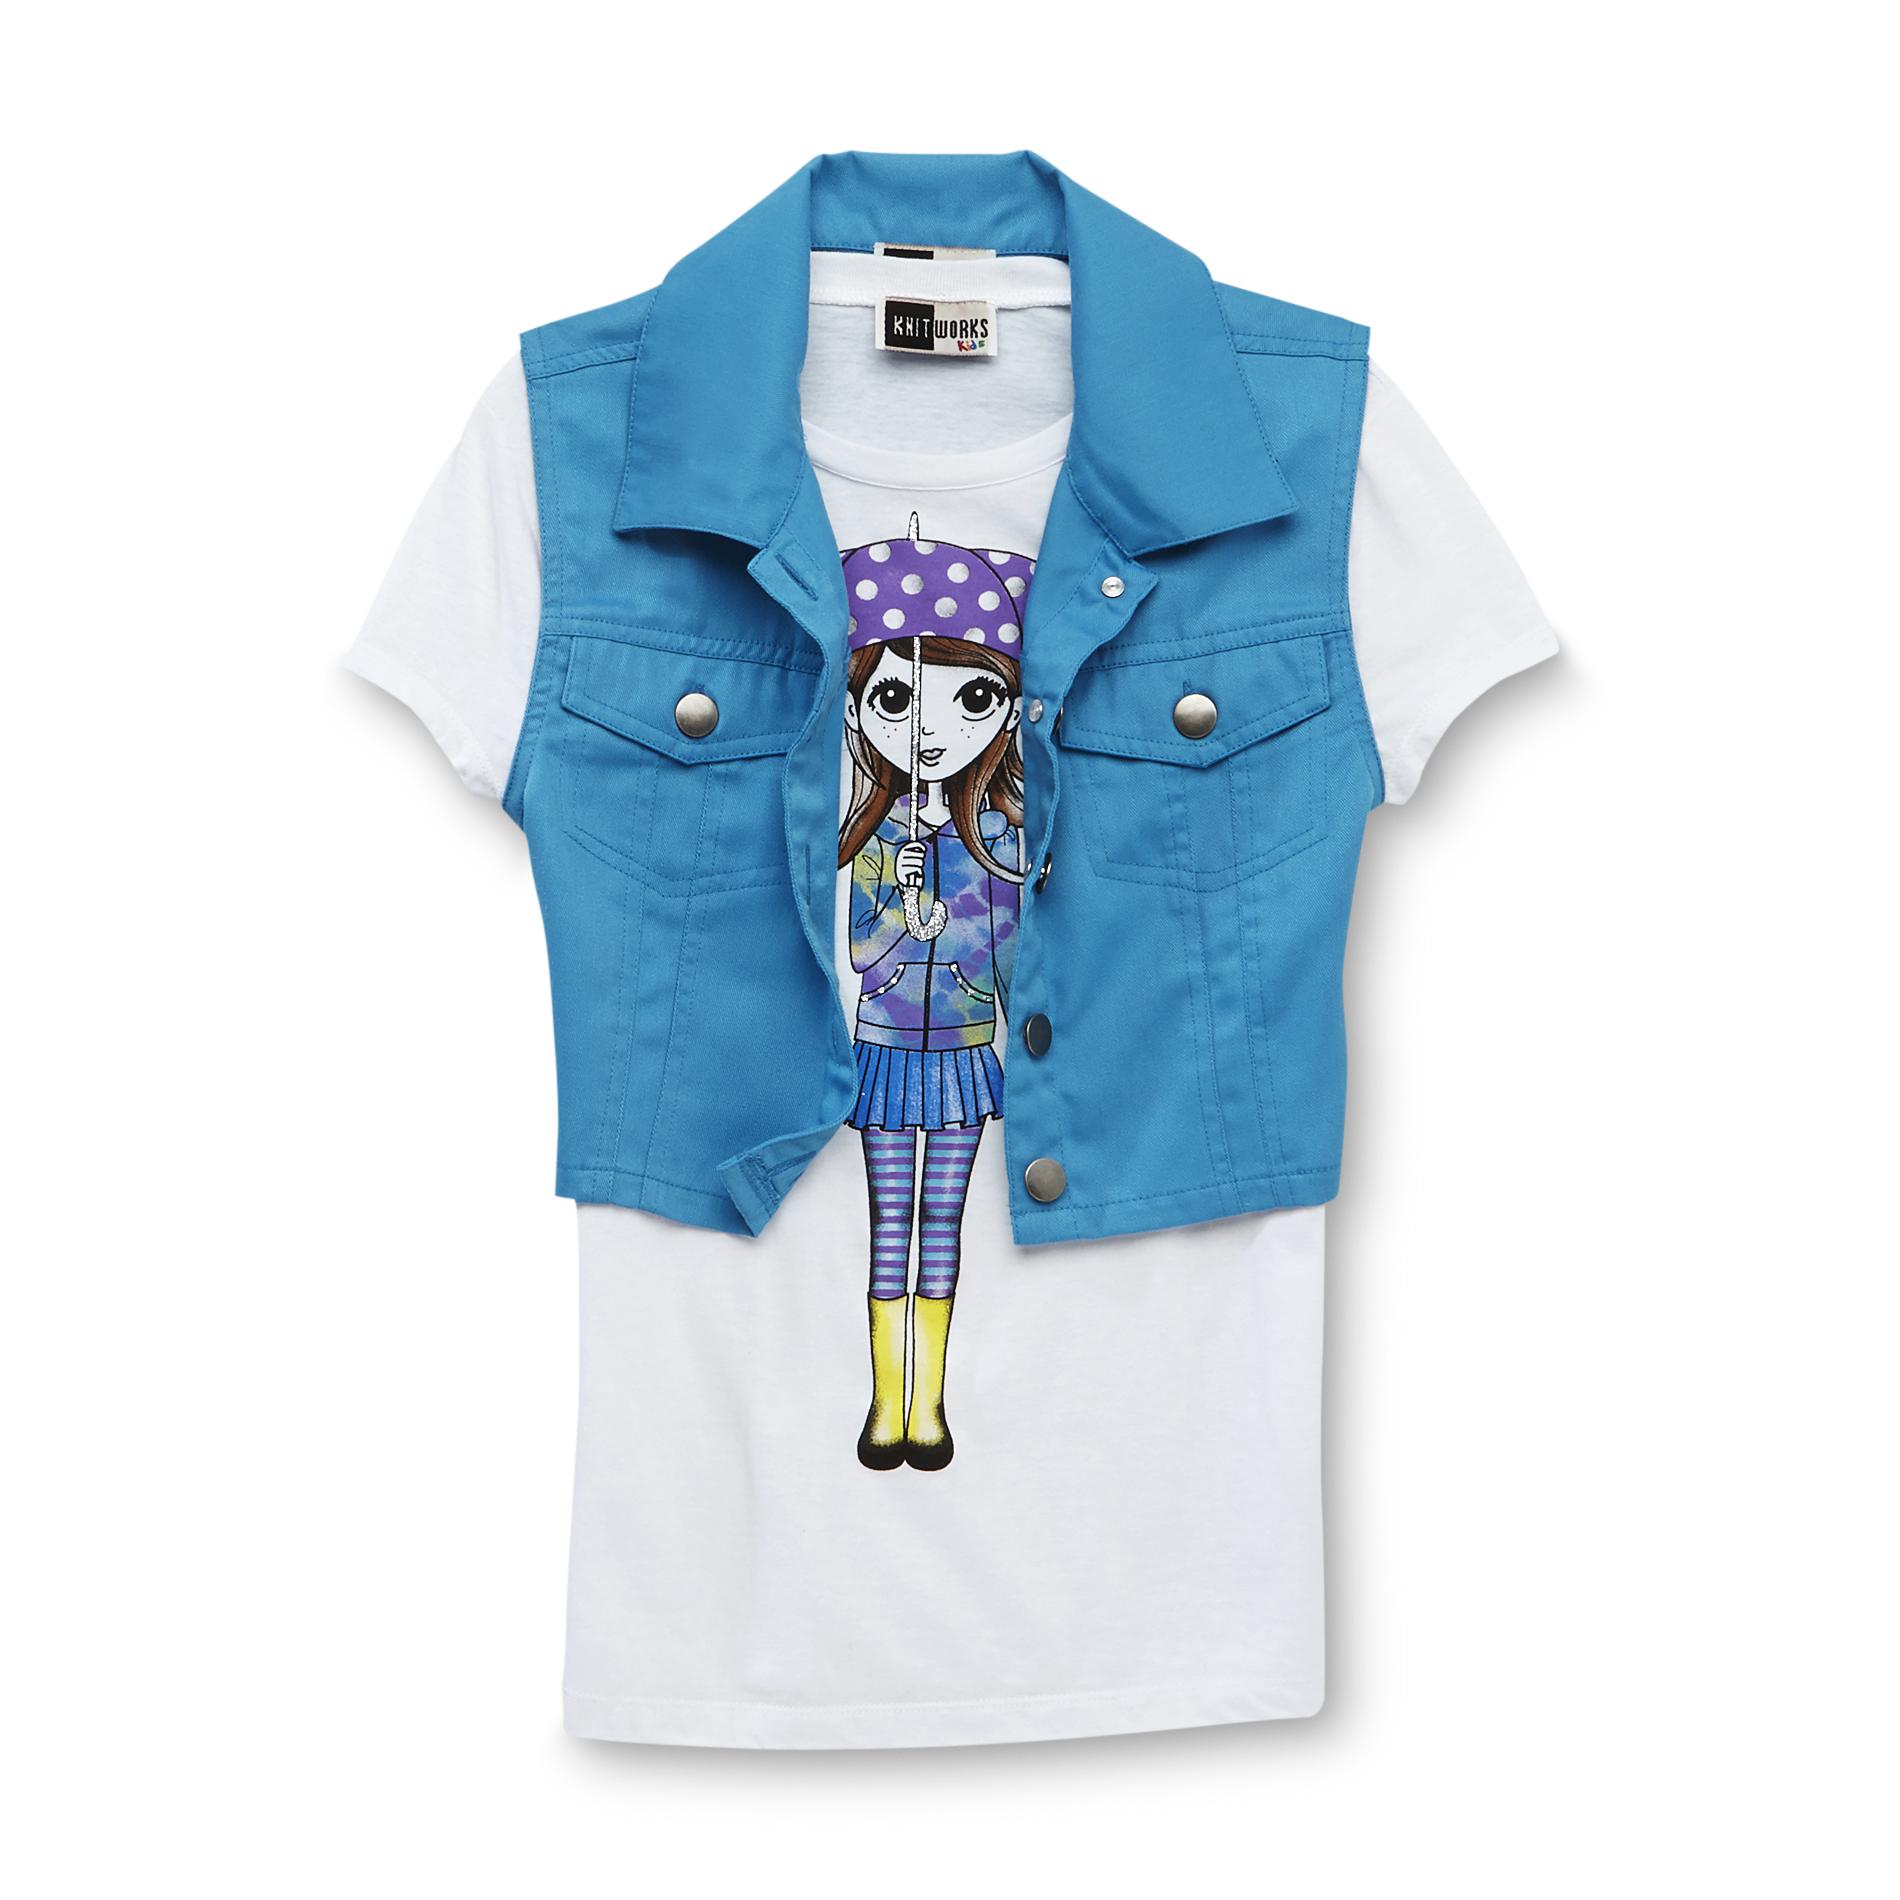 Knitworks Kids Girl's Vest & Glittered T-Shirt - Umbrella Girl